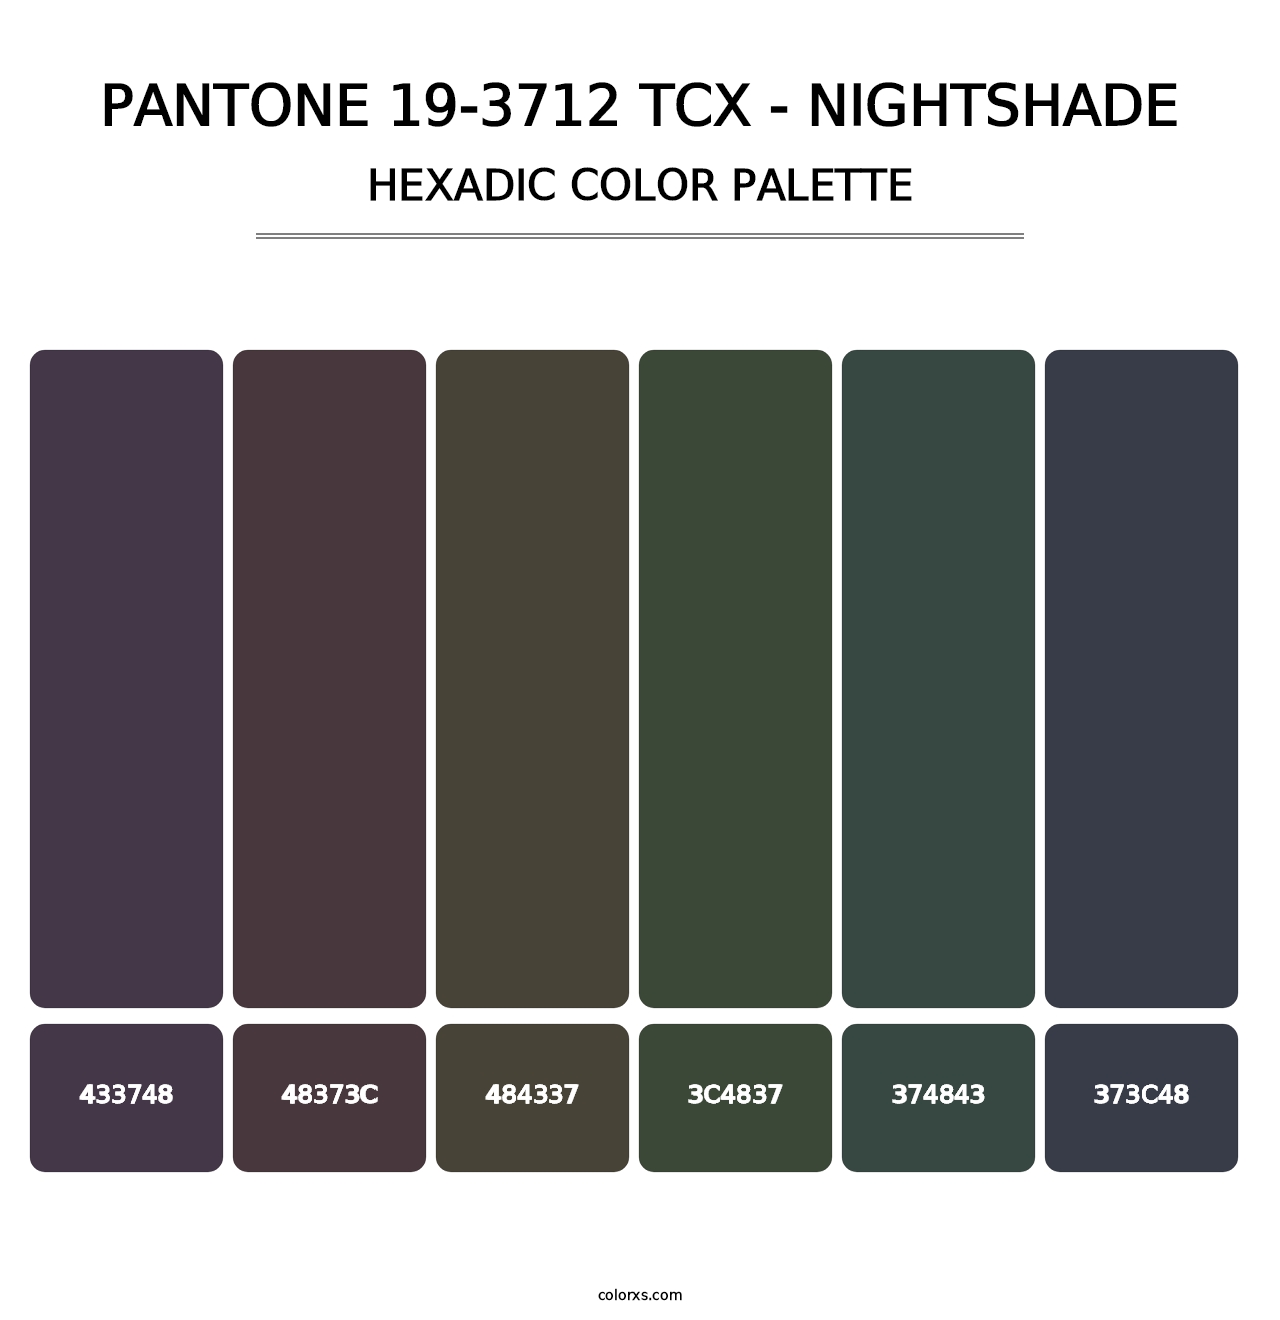 PANTONE 19-3712 TCX - Nightshade - Hexadic Color Palette